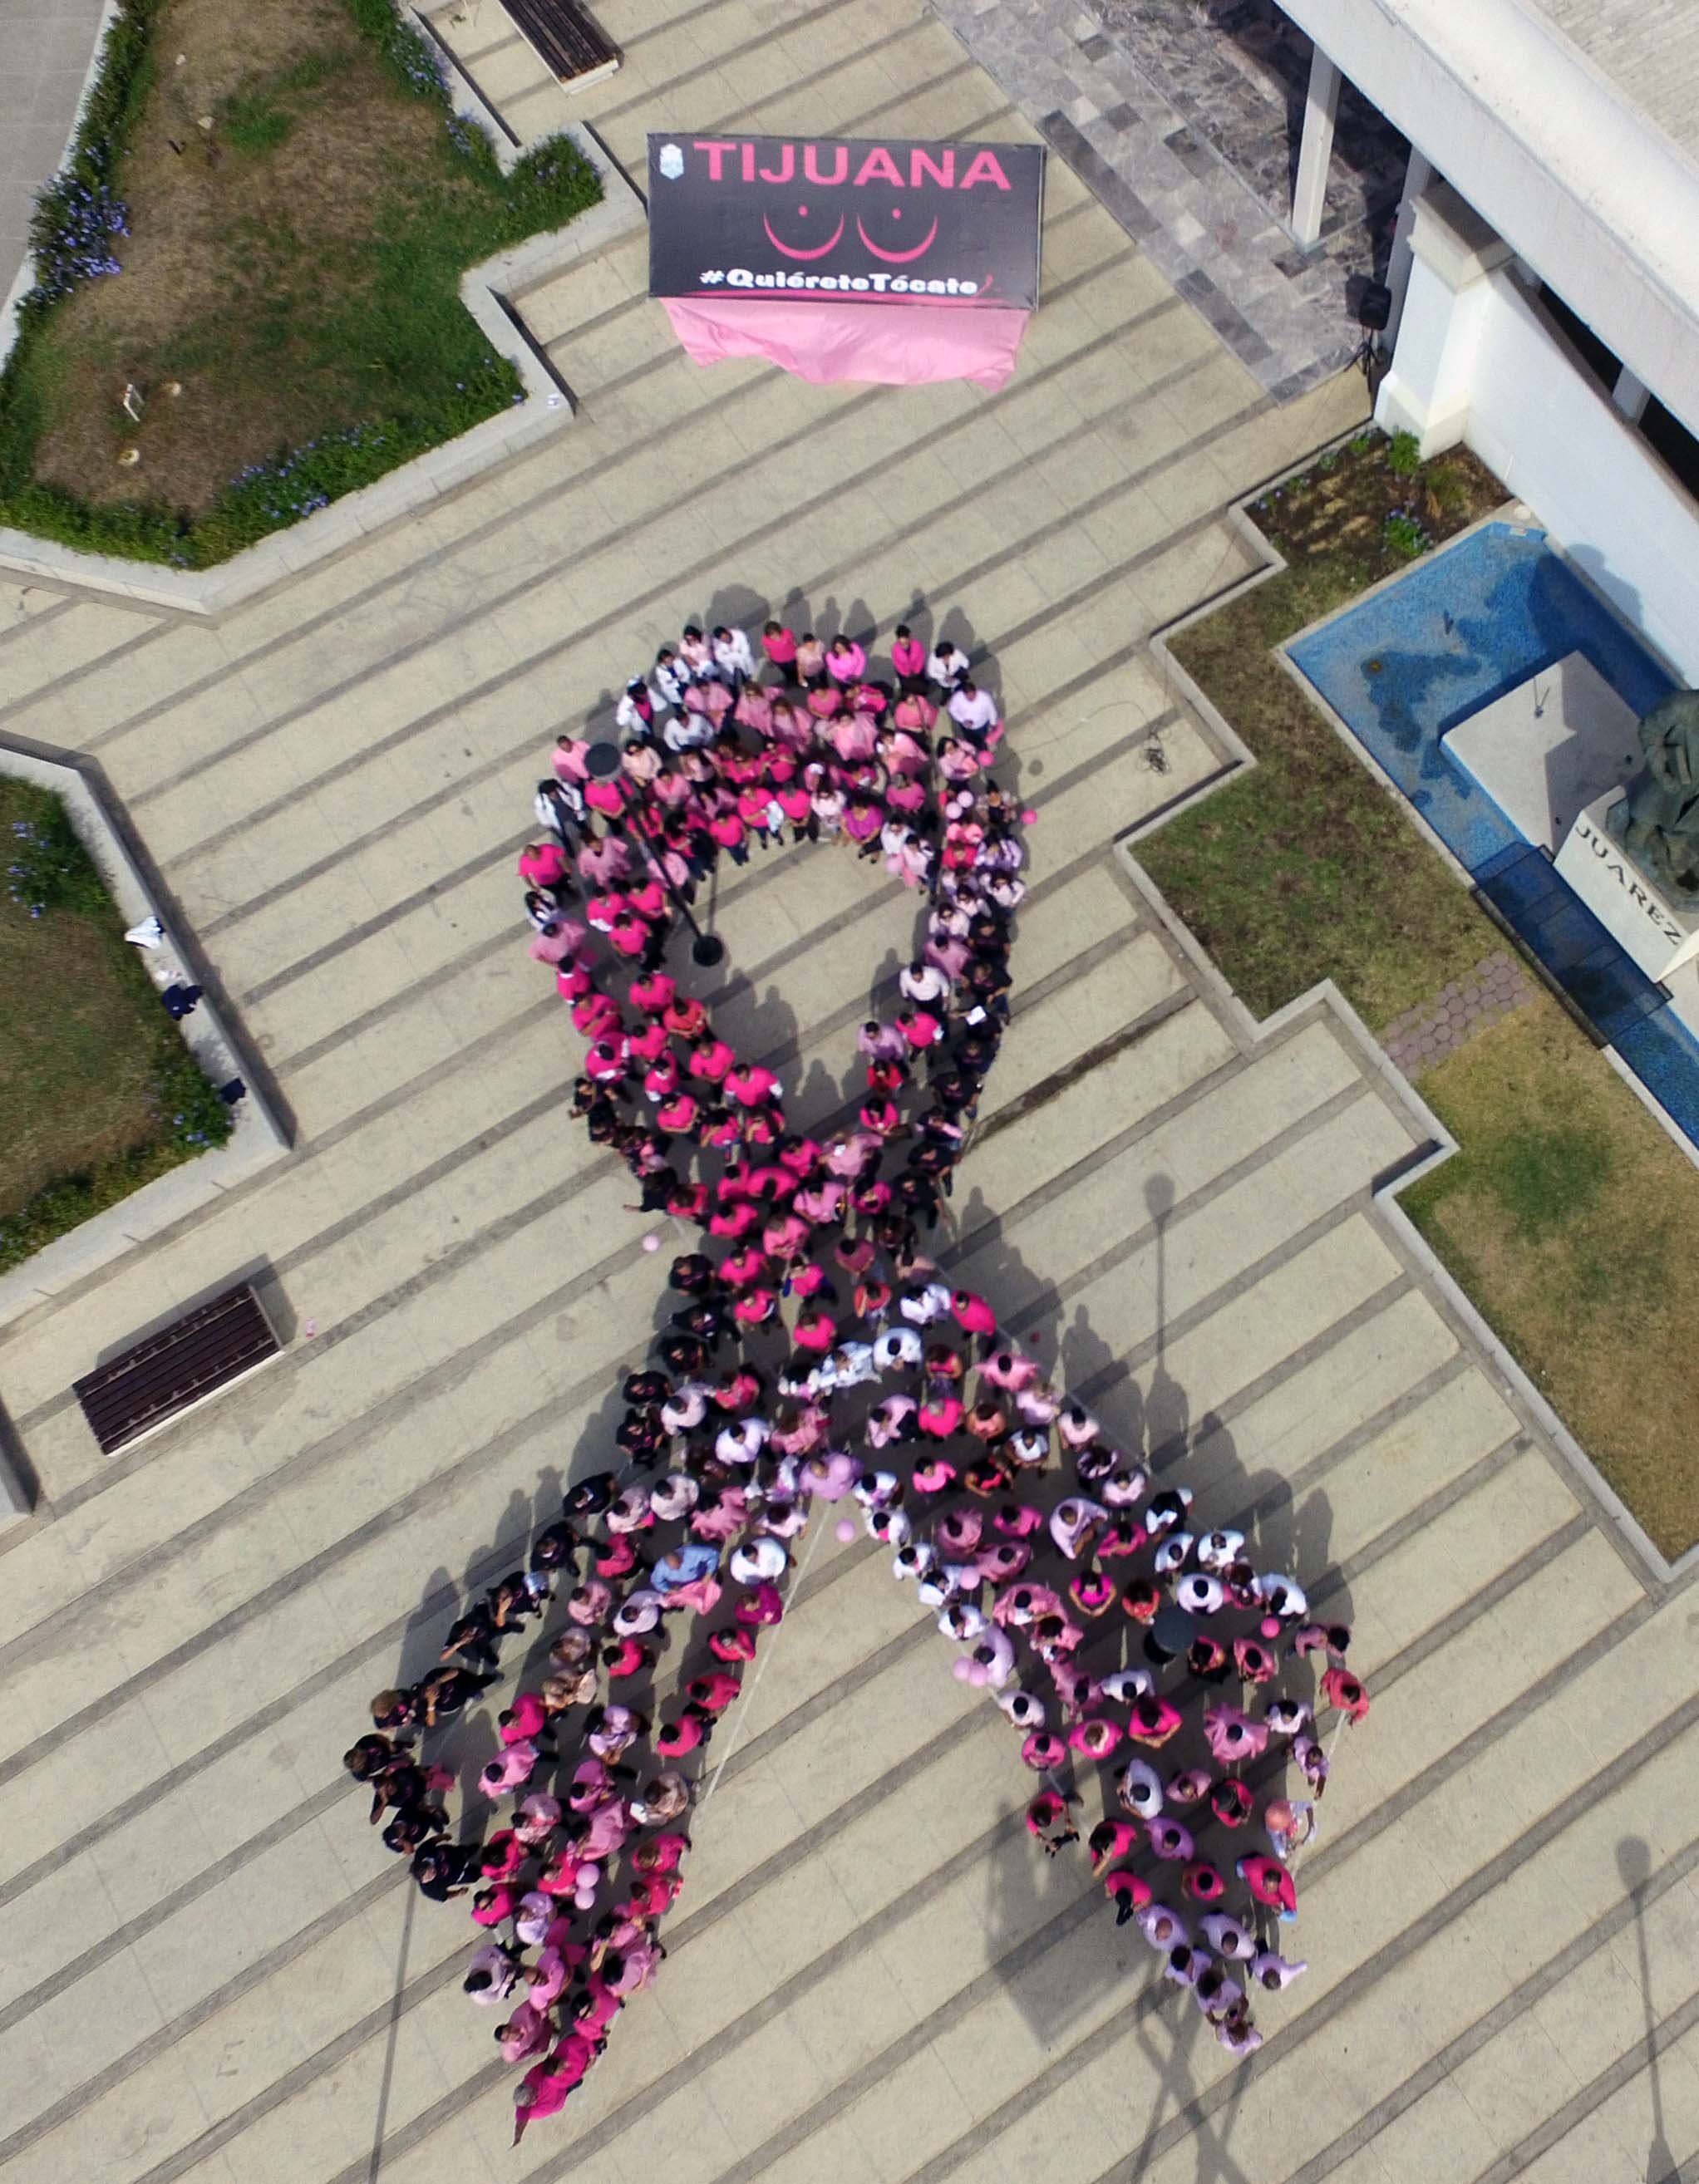 Se unen contra el cáncer de mama en jornada de salud